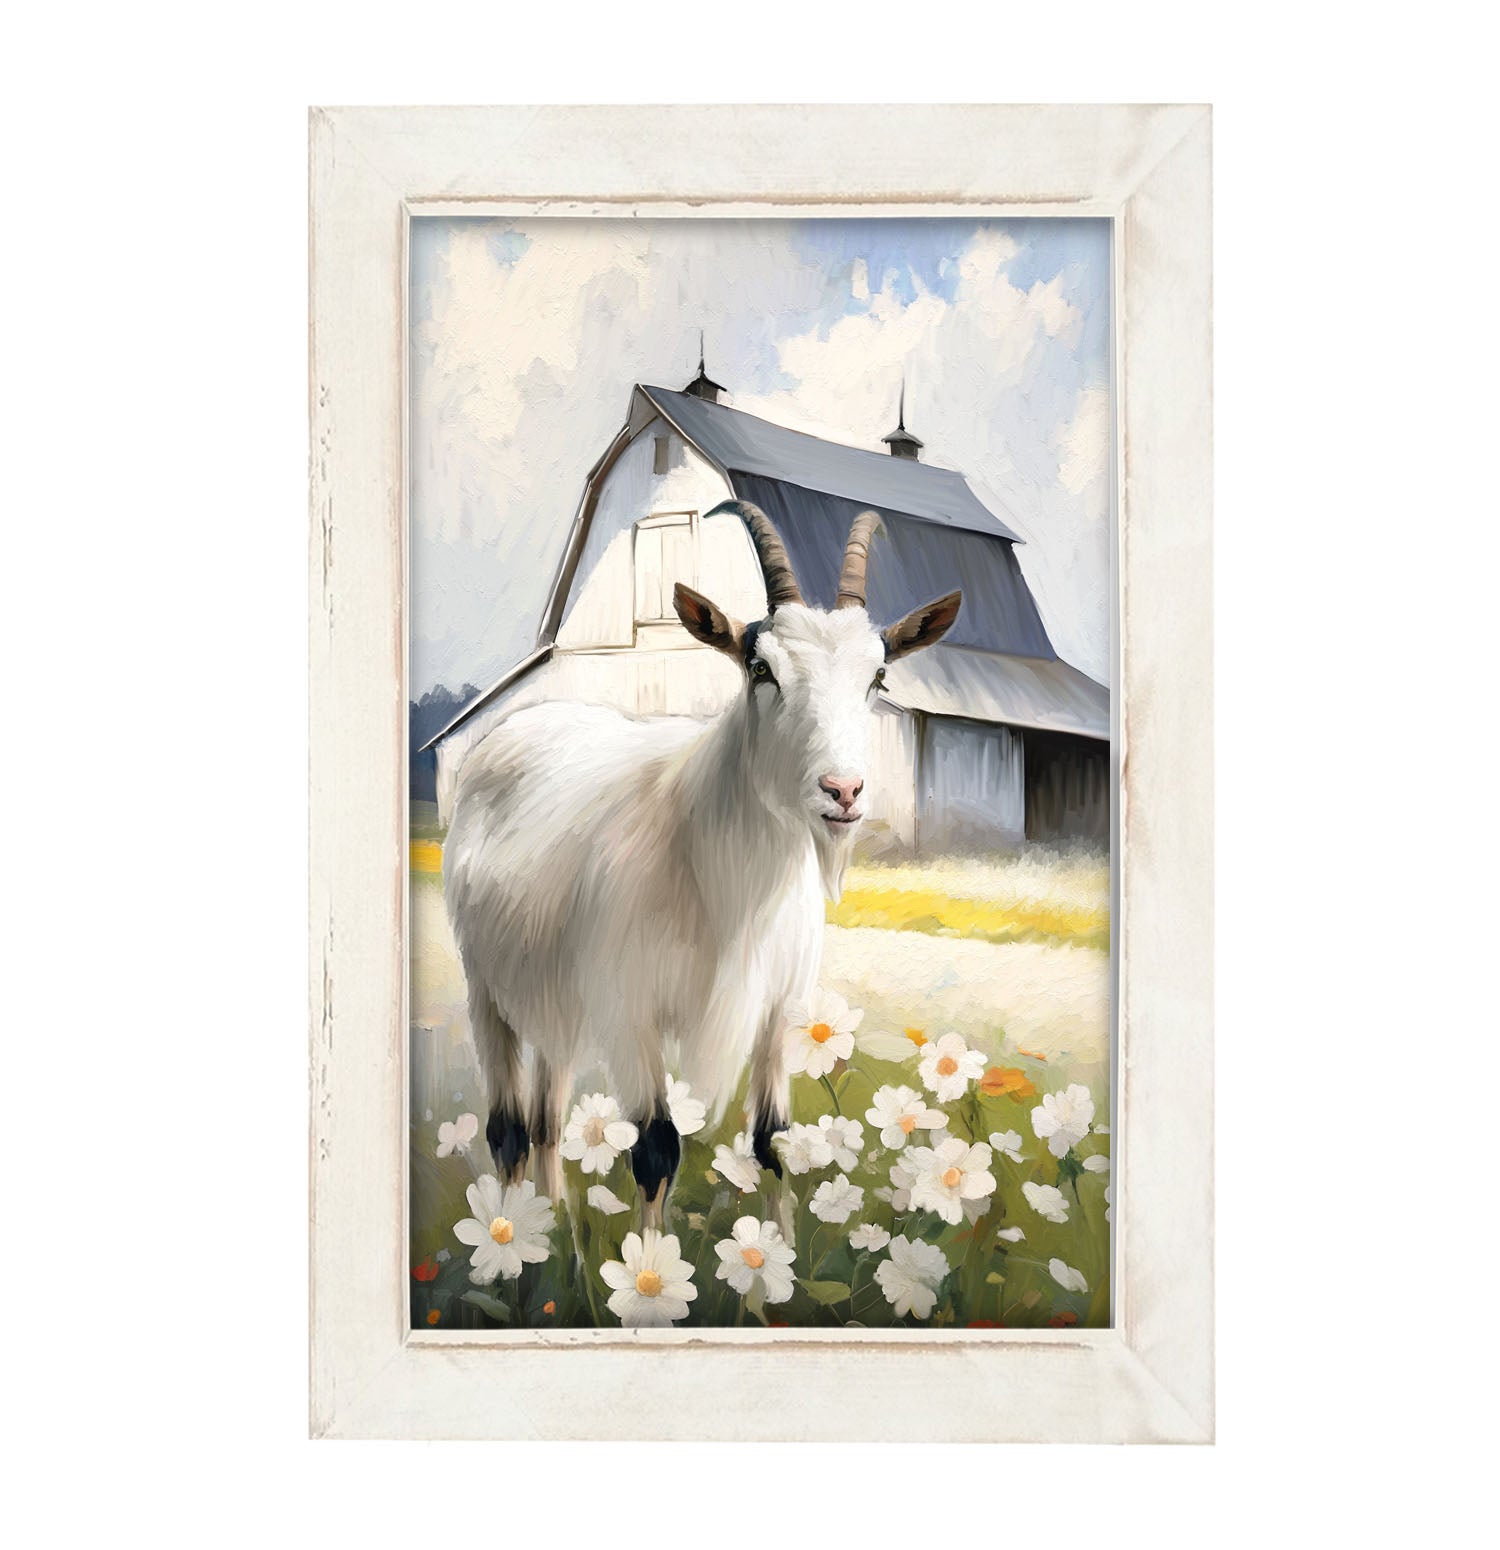 Goat in flowers